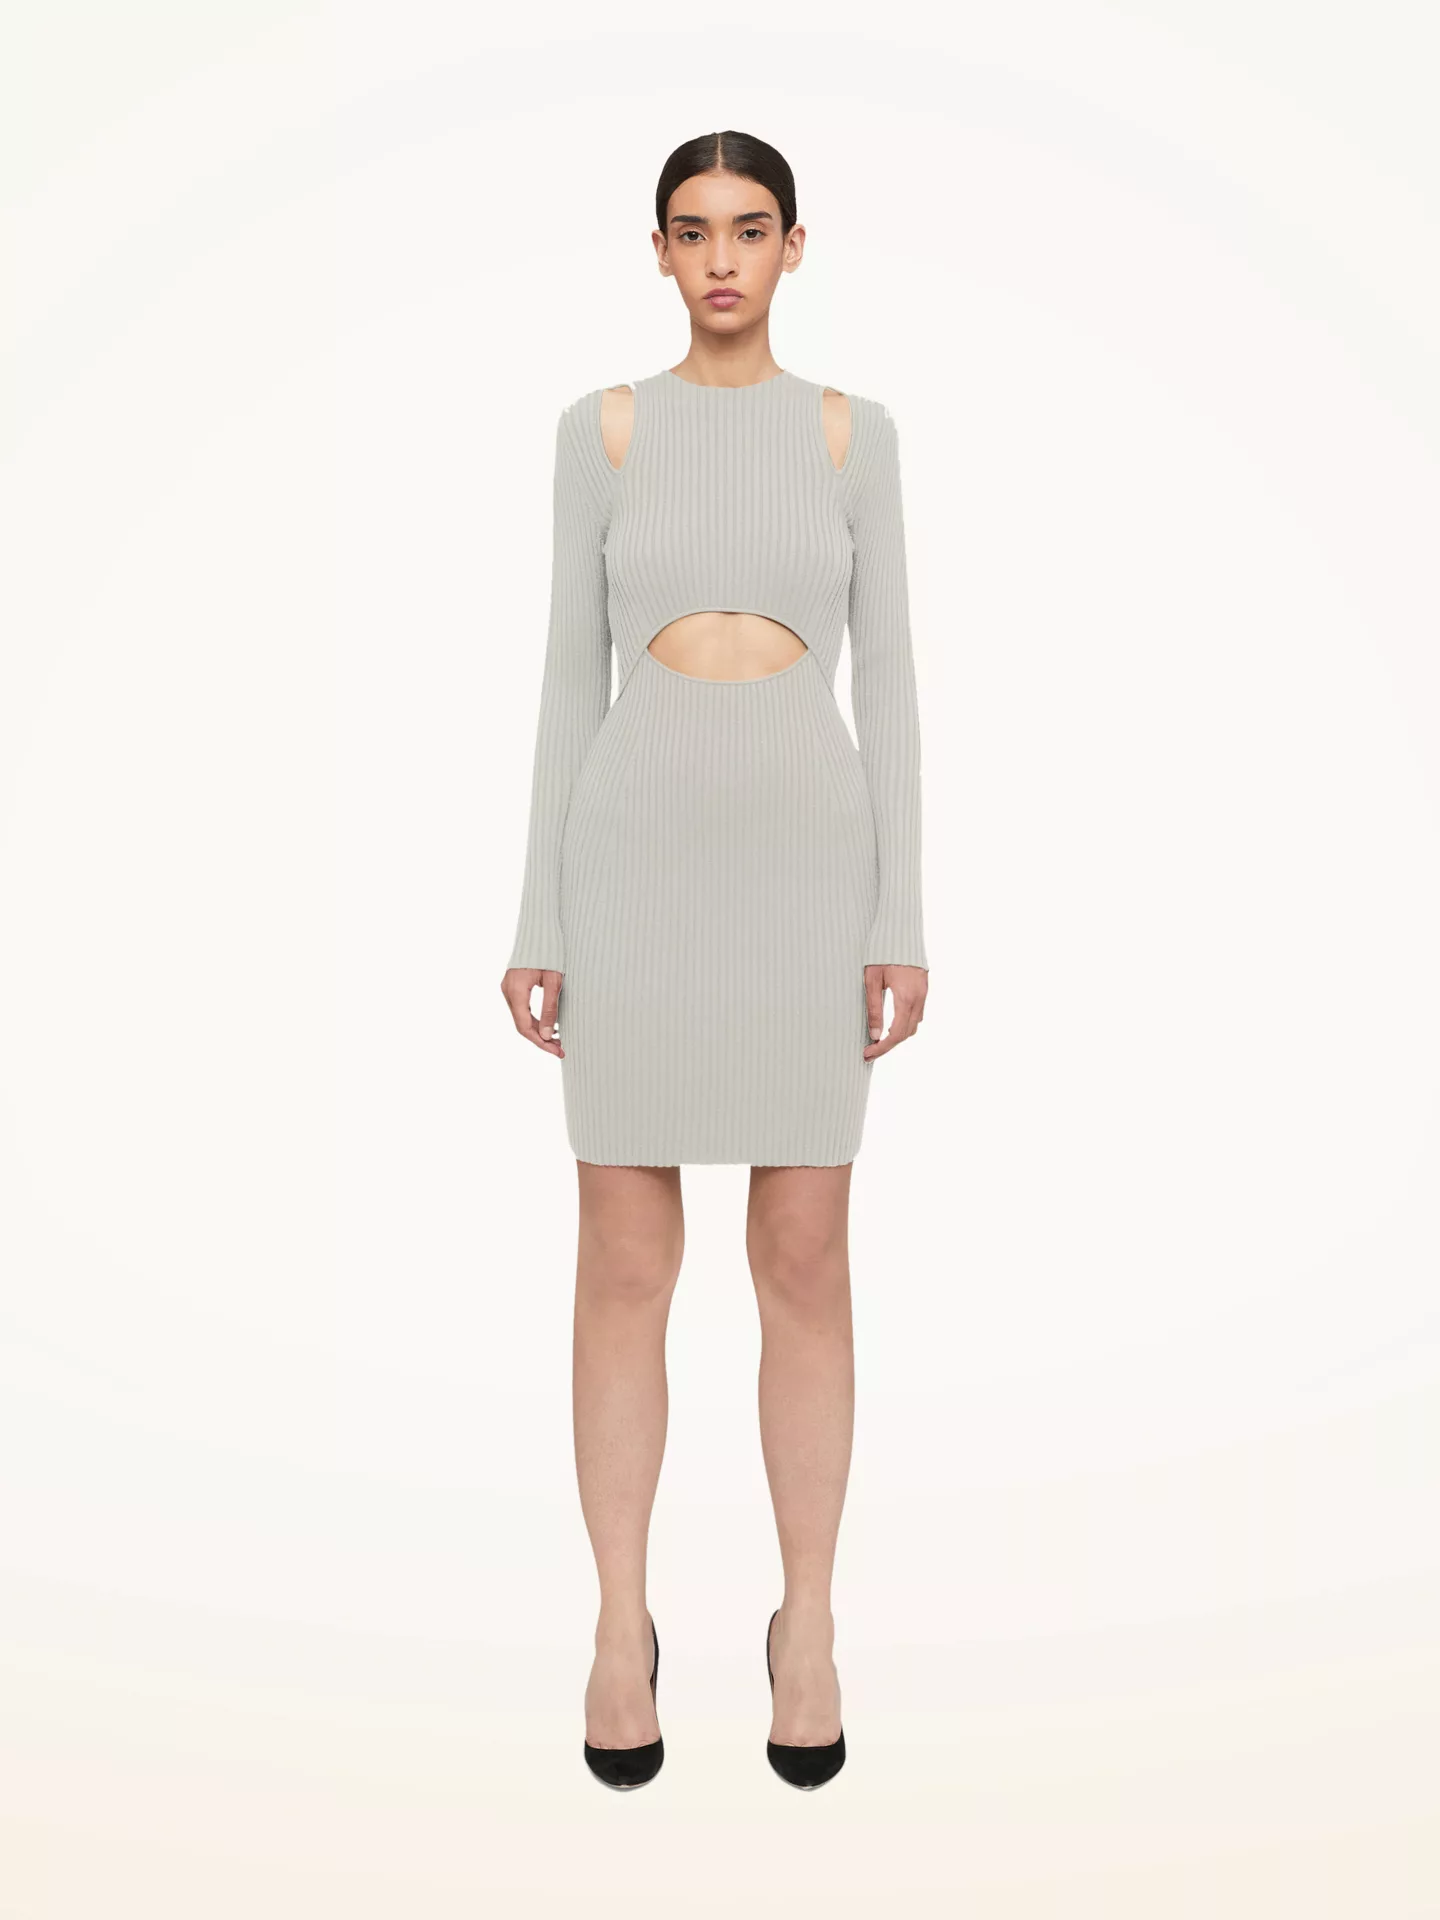 Wolford - Contoured Ribs Dress, Frau, ecrue, Größe: L günstig online kaufen